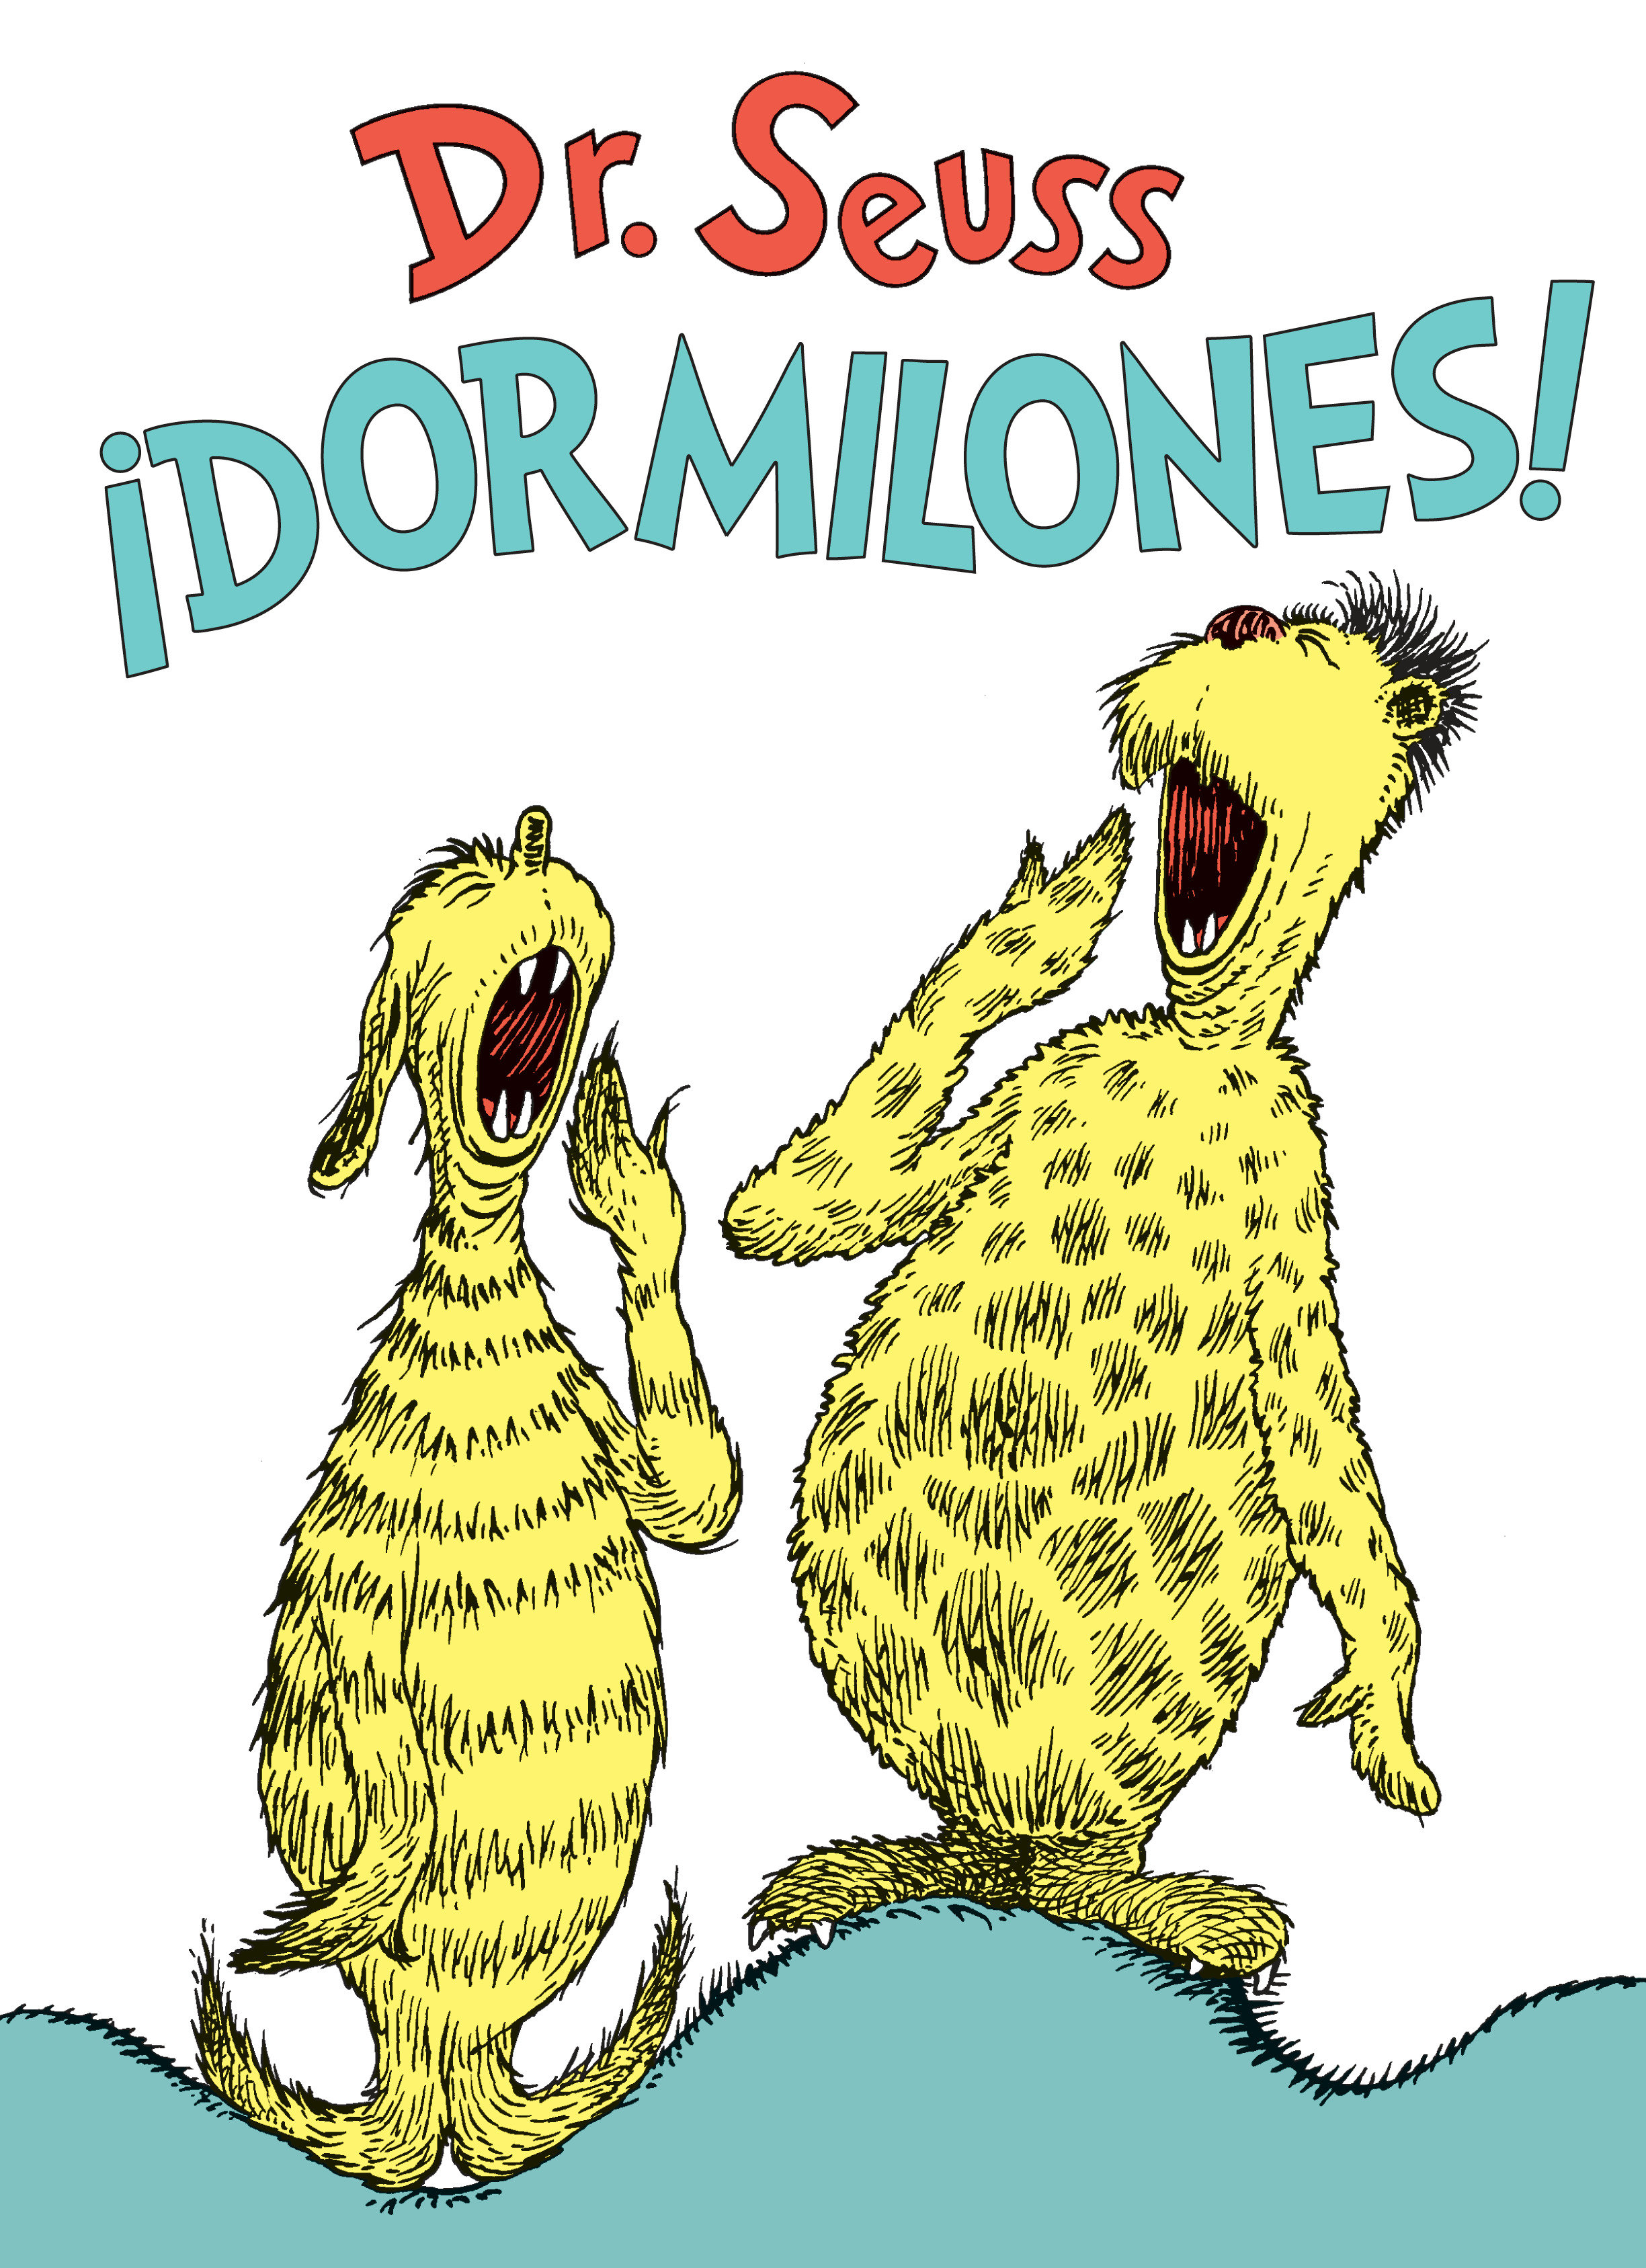 ¡Dormilones! (Dr. Seuss's Sleep Book Spanish Edition), Dr. Seuss's Sleep Book